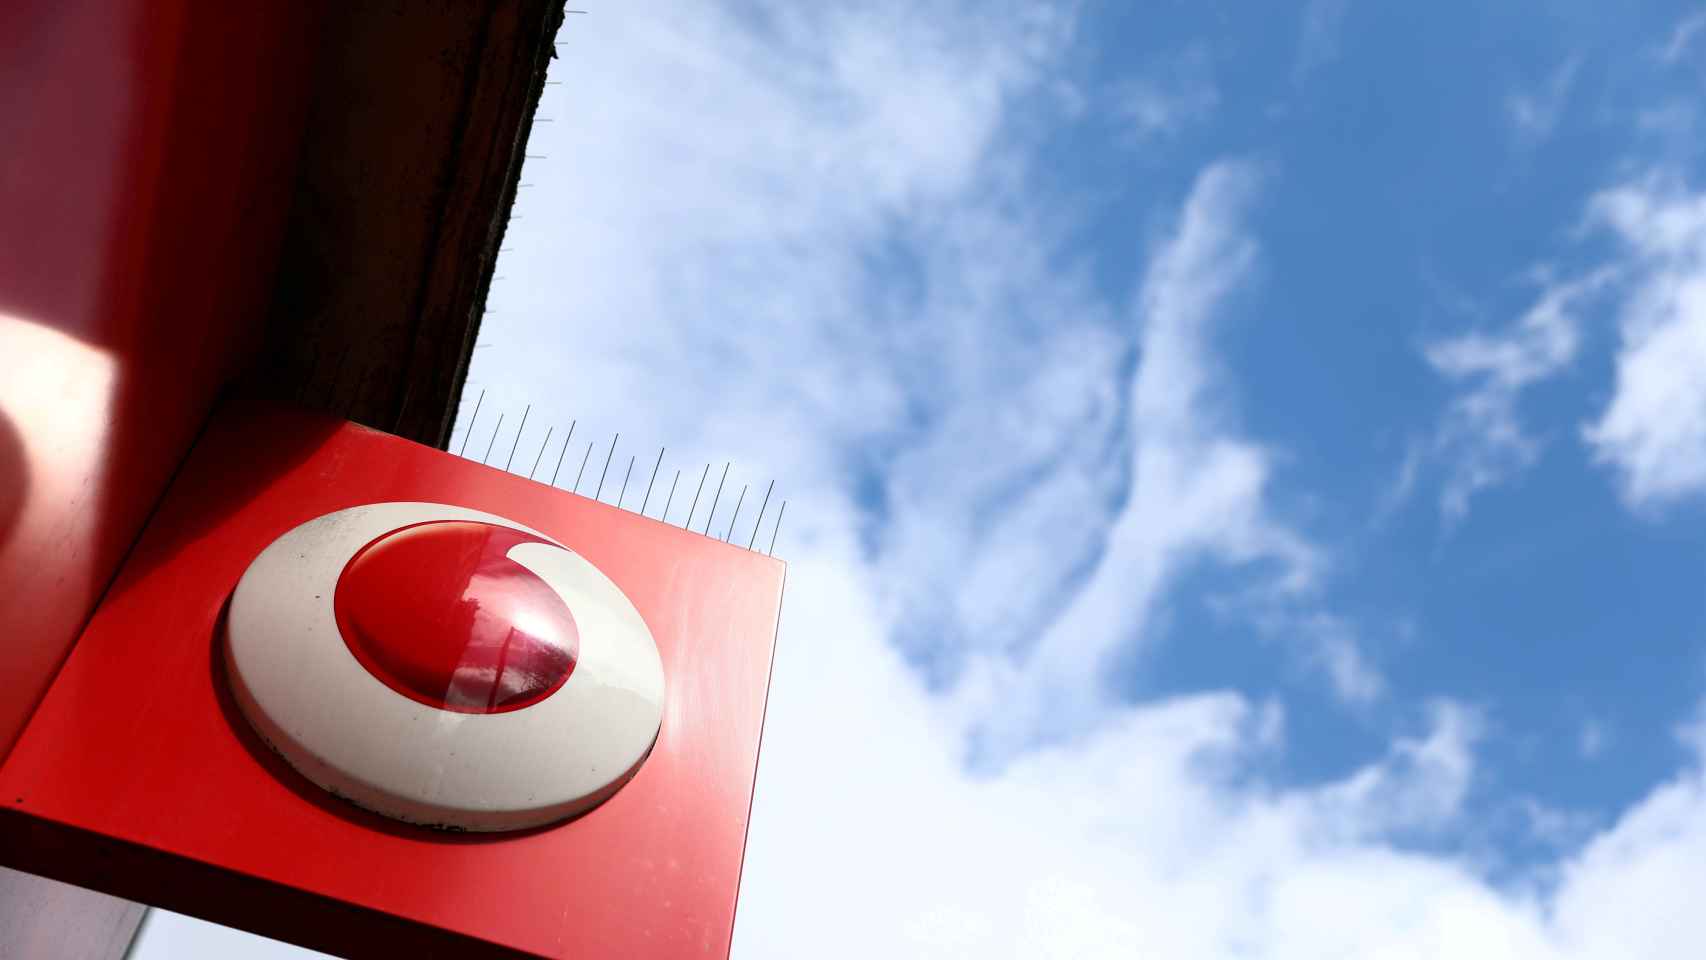 Logo de Vodafone, en una imagen de archivo.